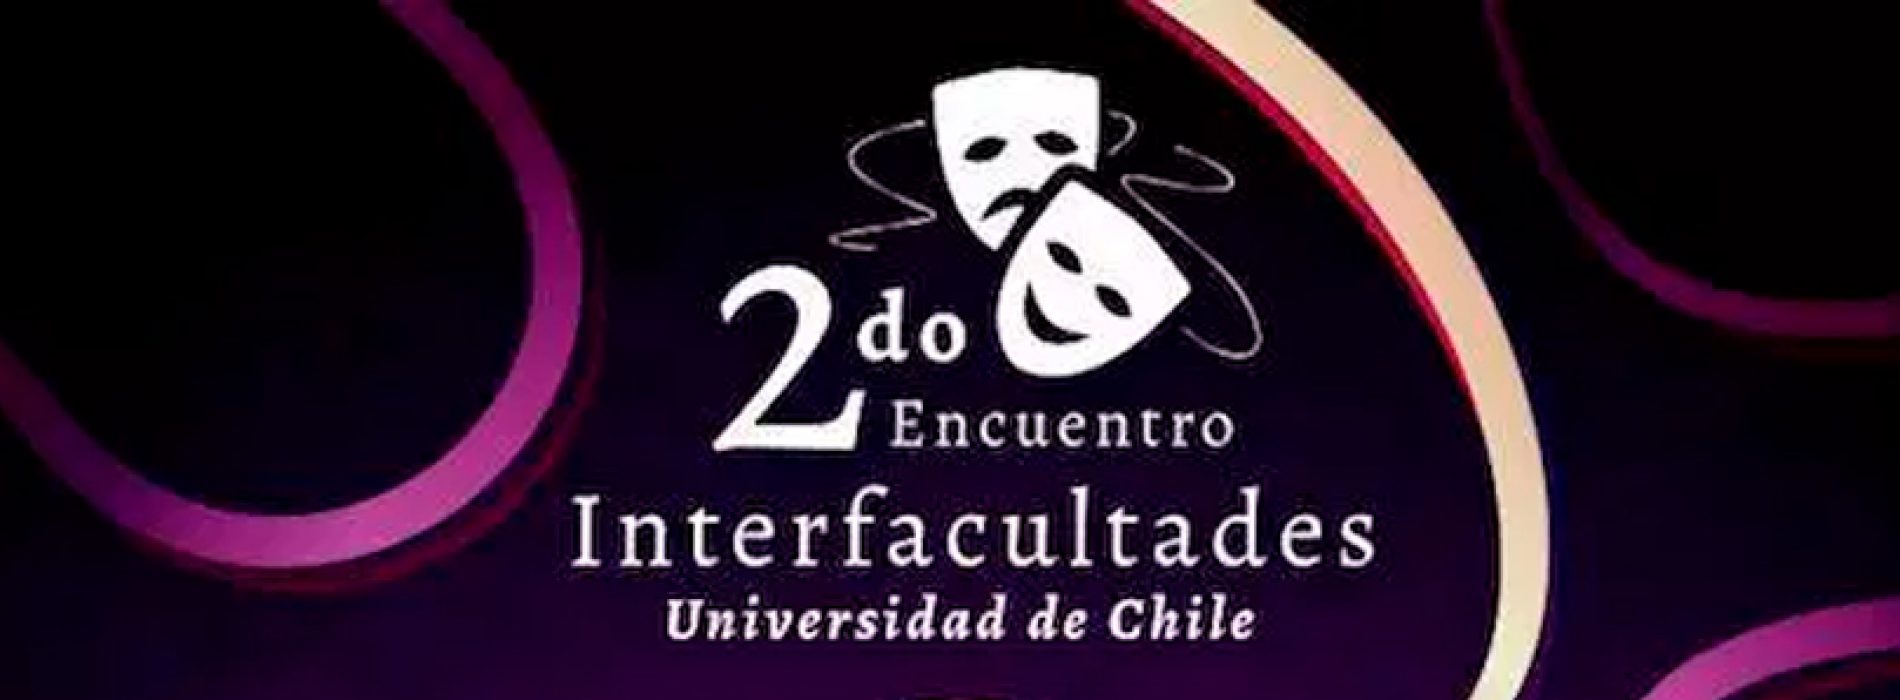 2do Encuentro de Teatro Interfacultades de la Universidad de Chile